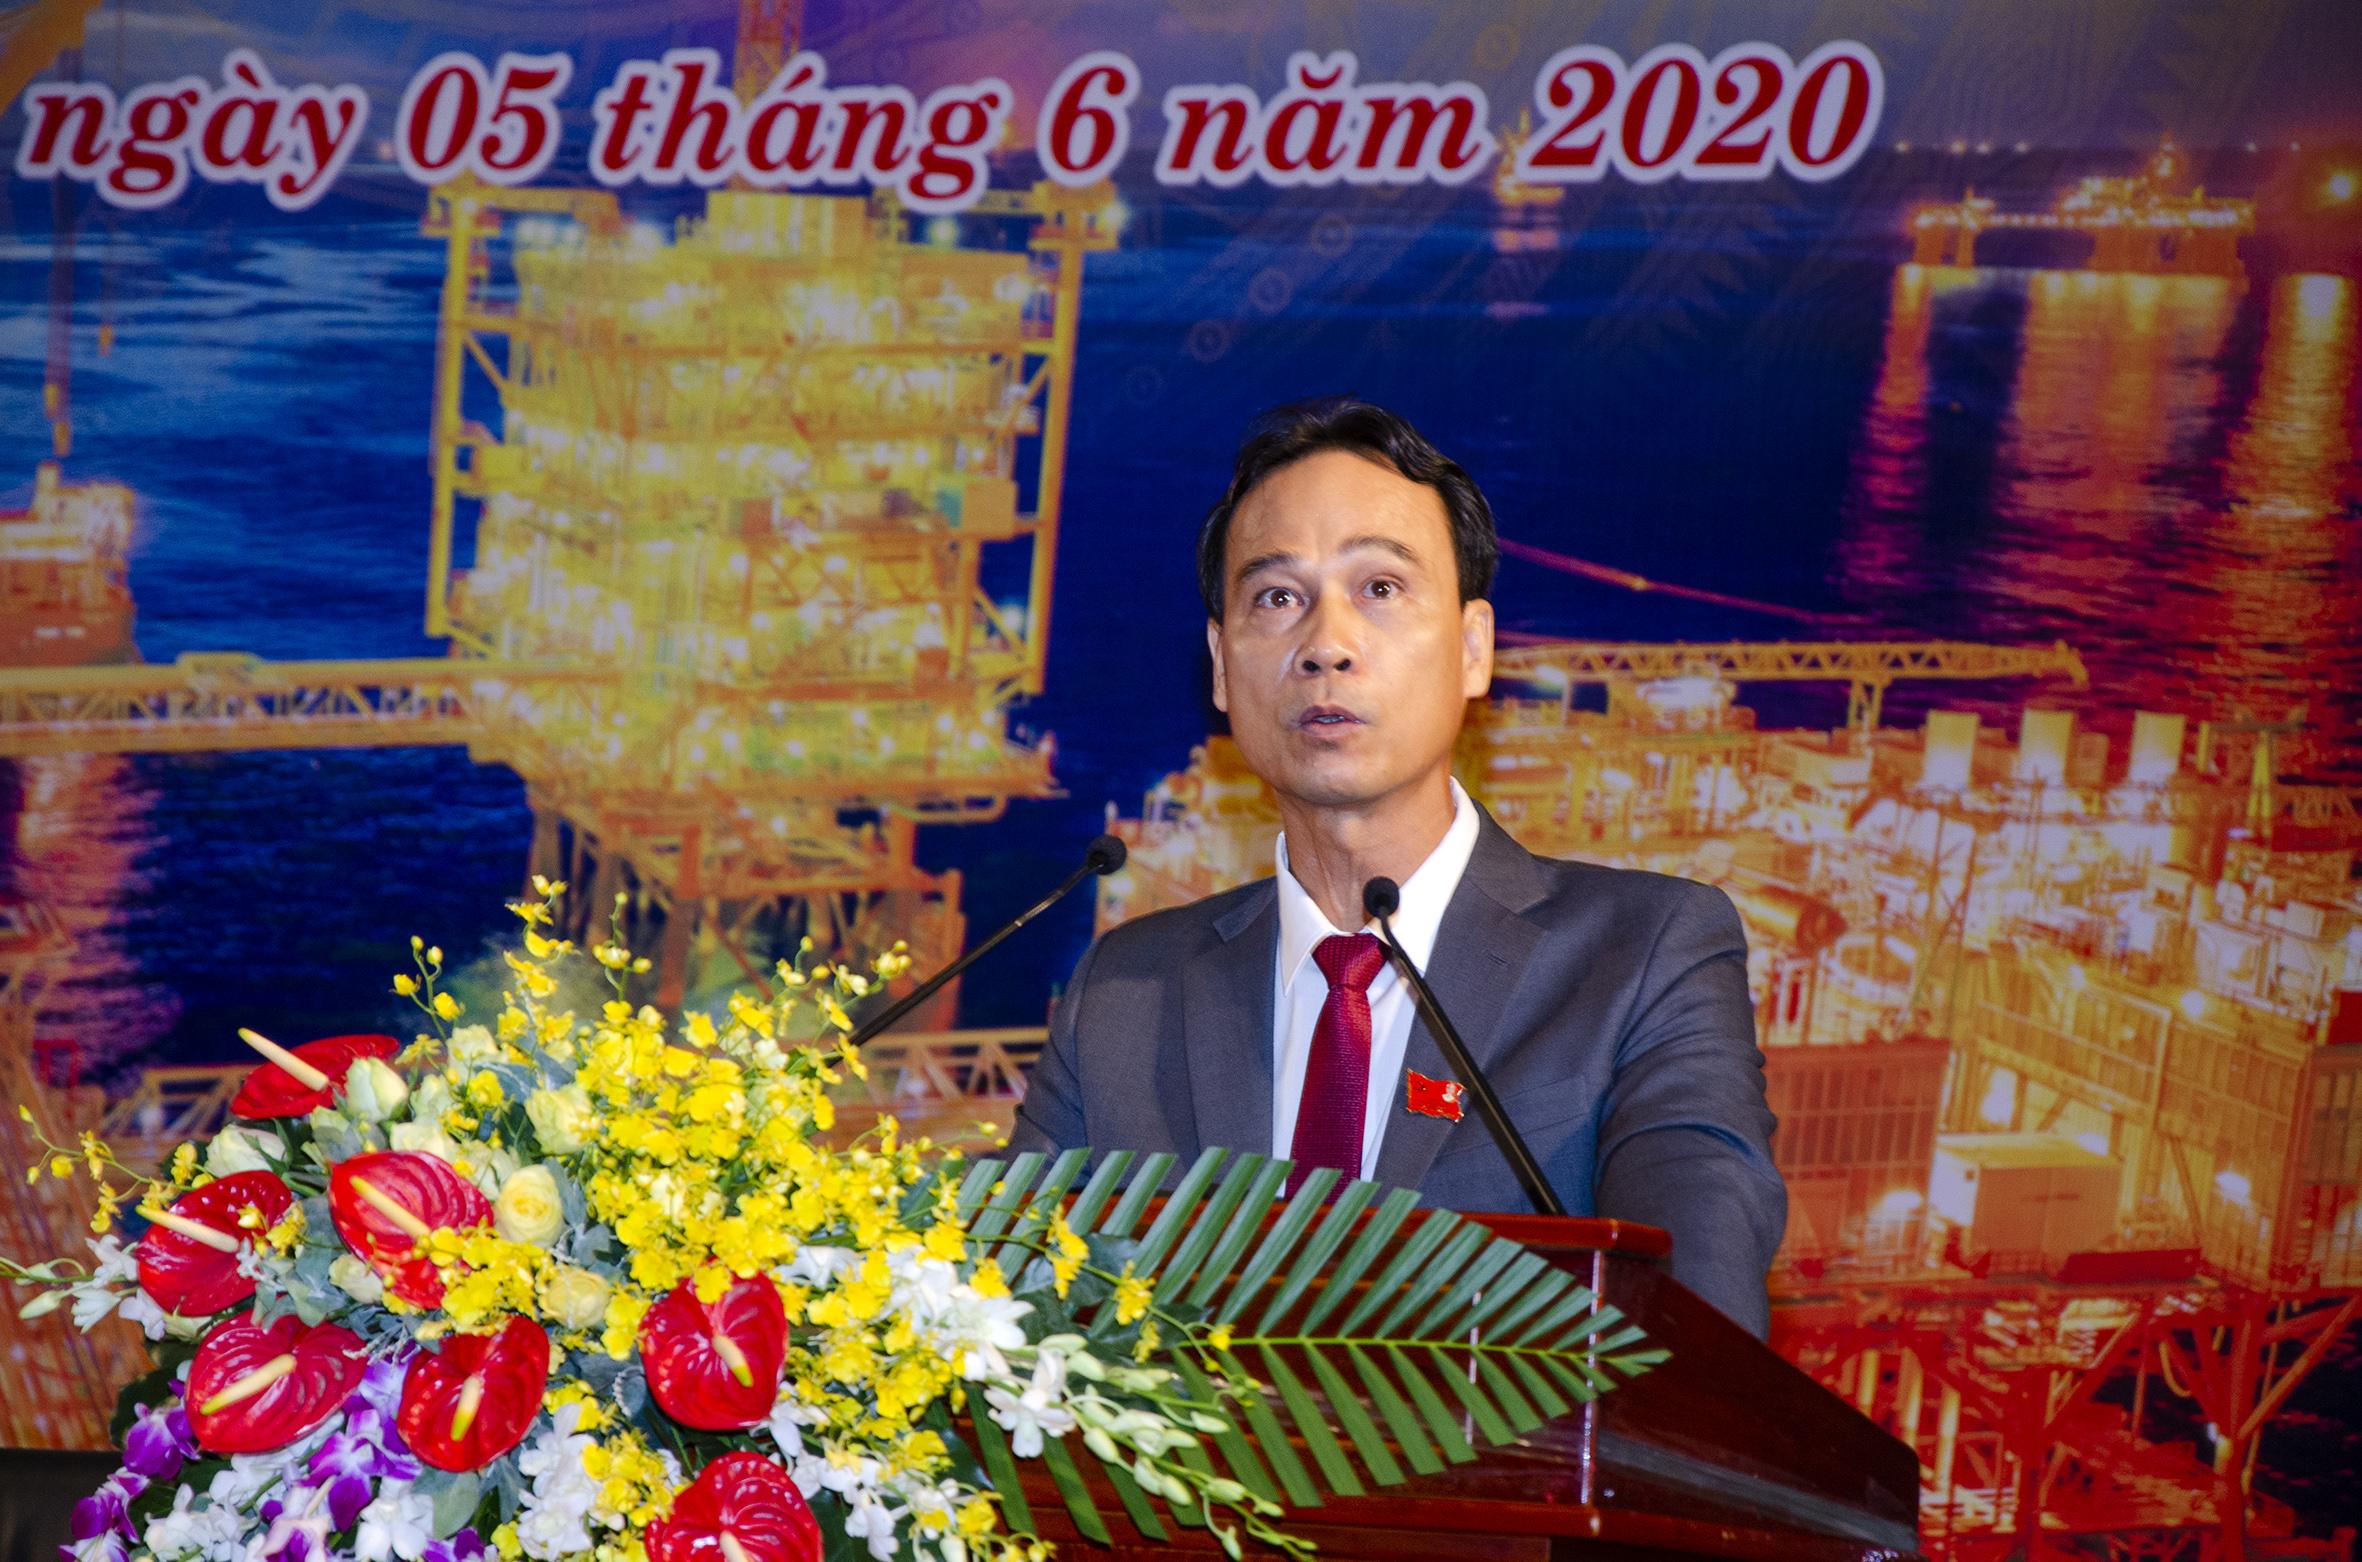 Ông Nguyễn Quỳnh Lâm, Bí thư Đảng ủy, Tổng Giám đốc Liên doanh Việt – Nga Vietsovpetro báo cáo tổng kết nhiệm kỳ 2015-2020 và phương hướng nhiệm vụ nhiệm kỳ 2020-2025 tại Đại hội.